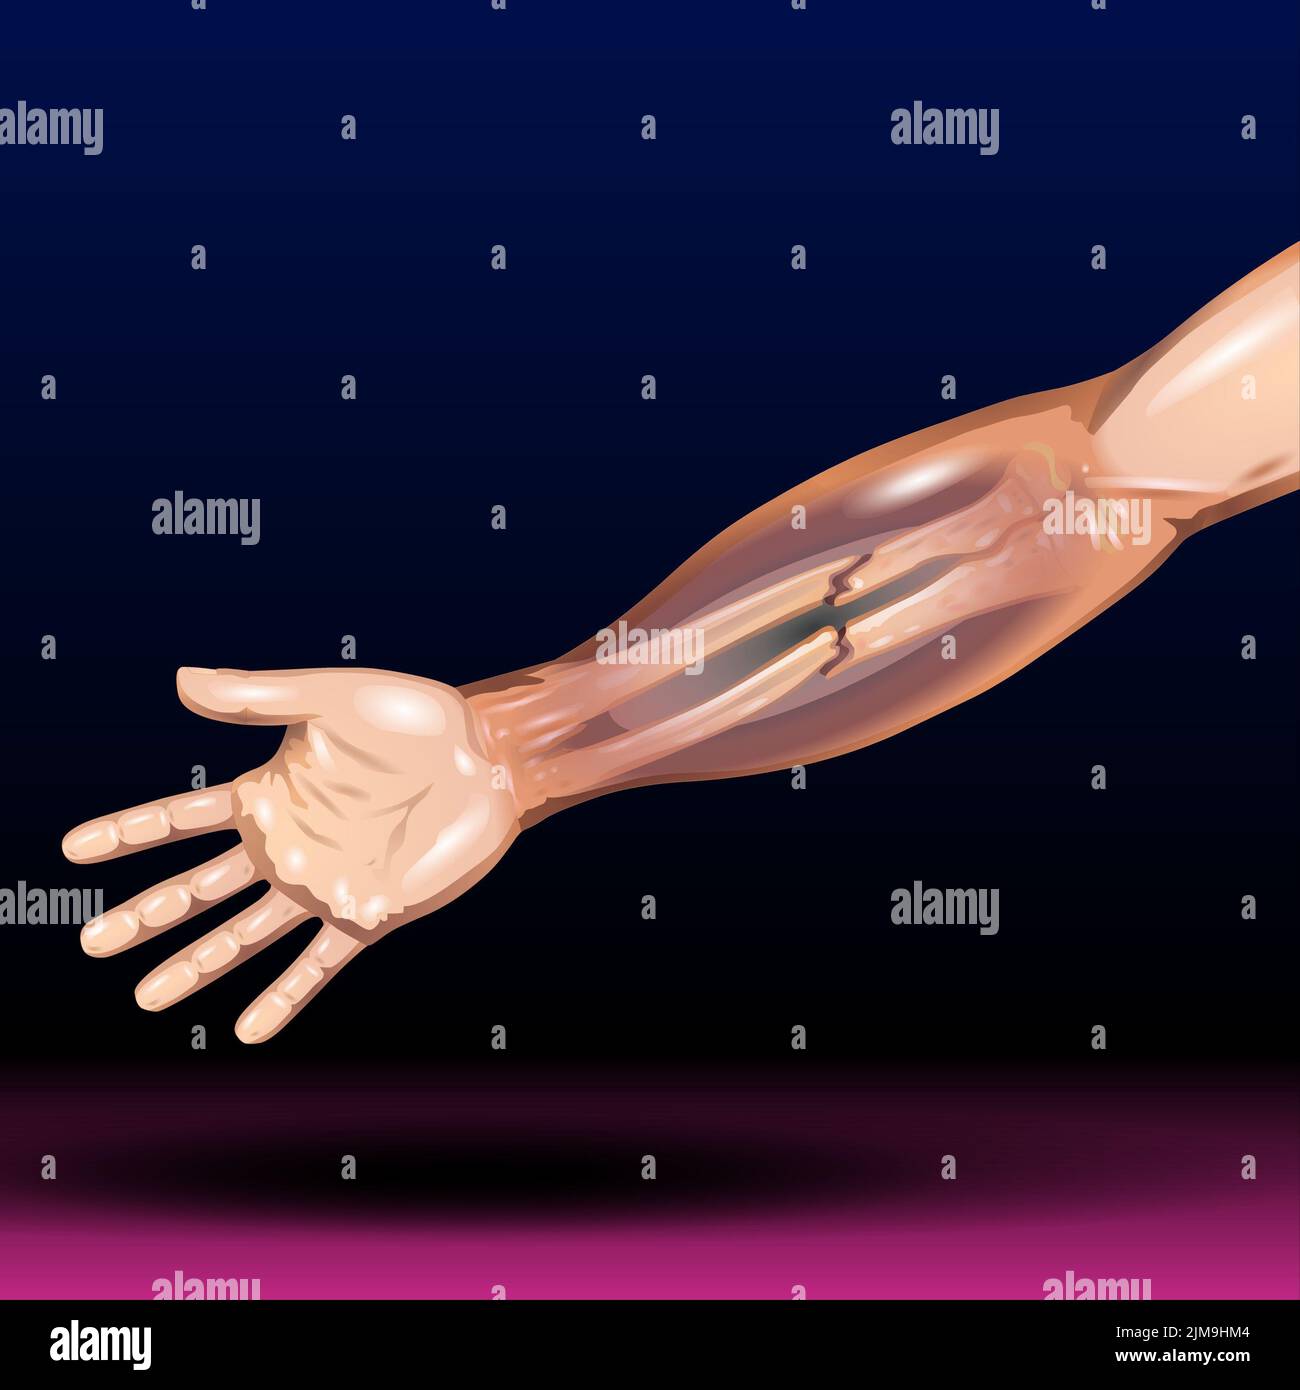 Fracture de l'os de la main - fracture du rayon distal et fracture du bras types d'os - Illustration vectorielle Banque D'Images